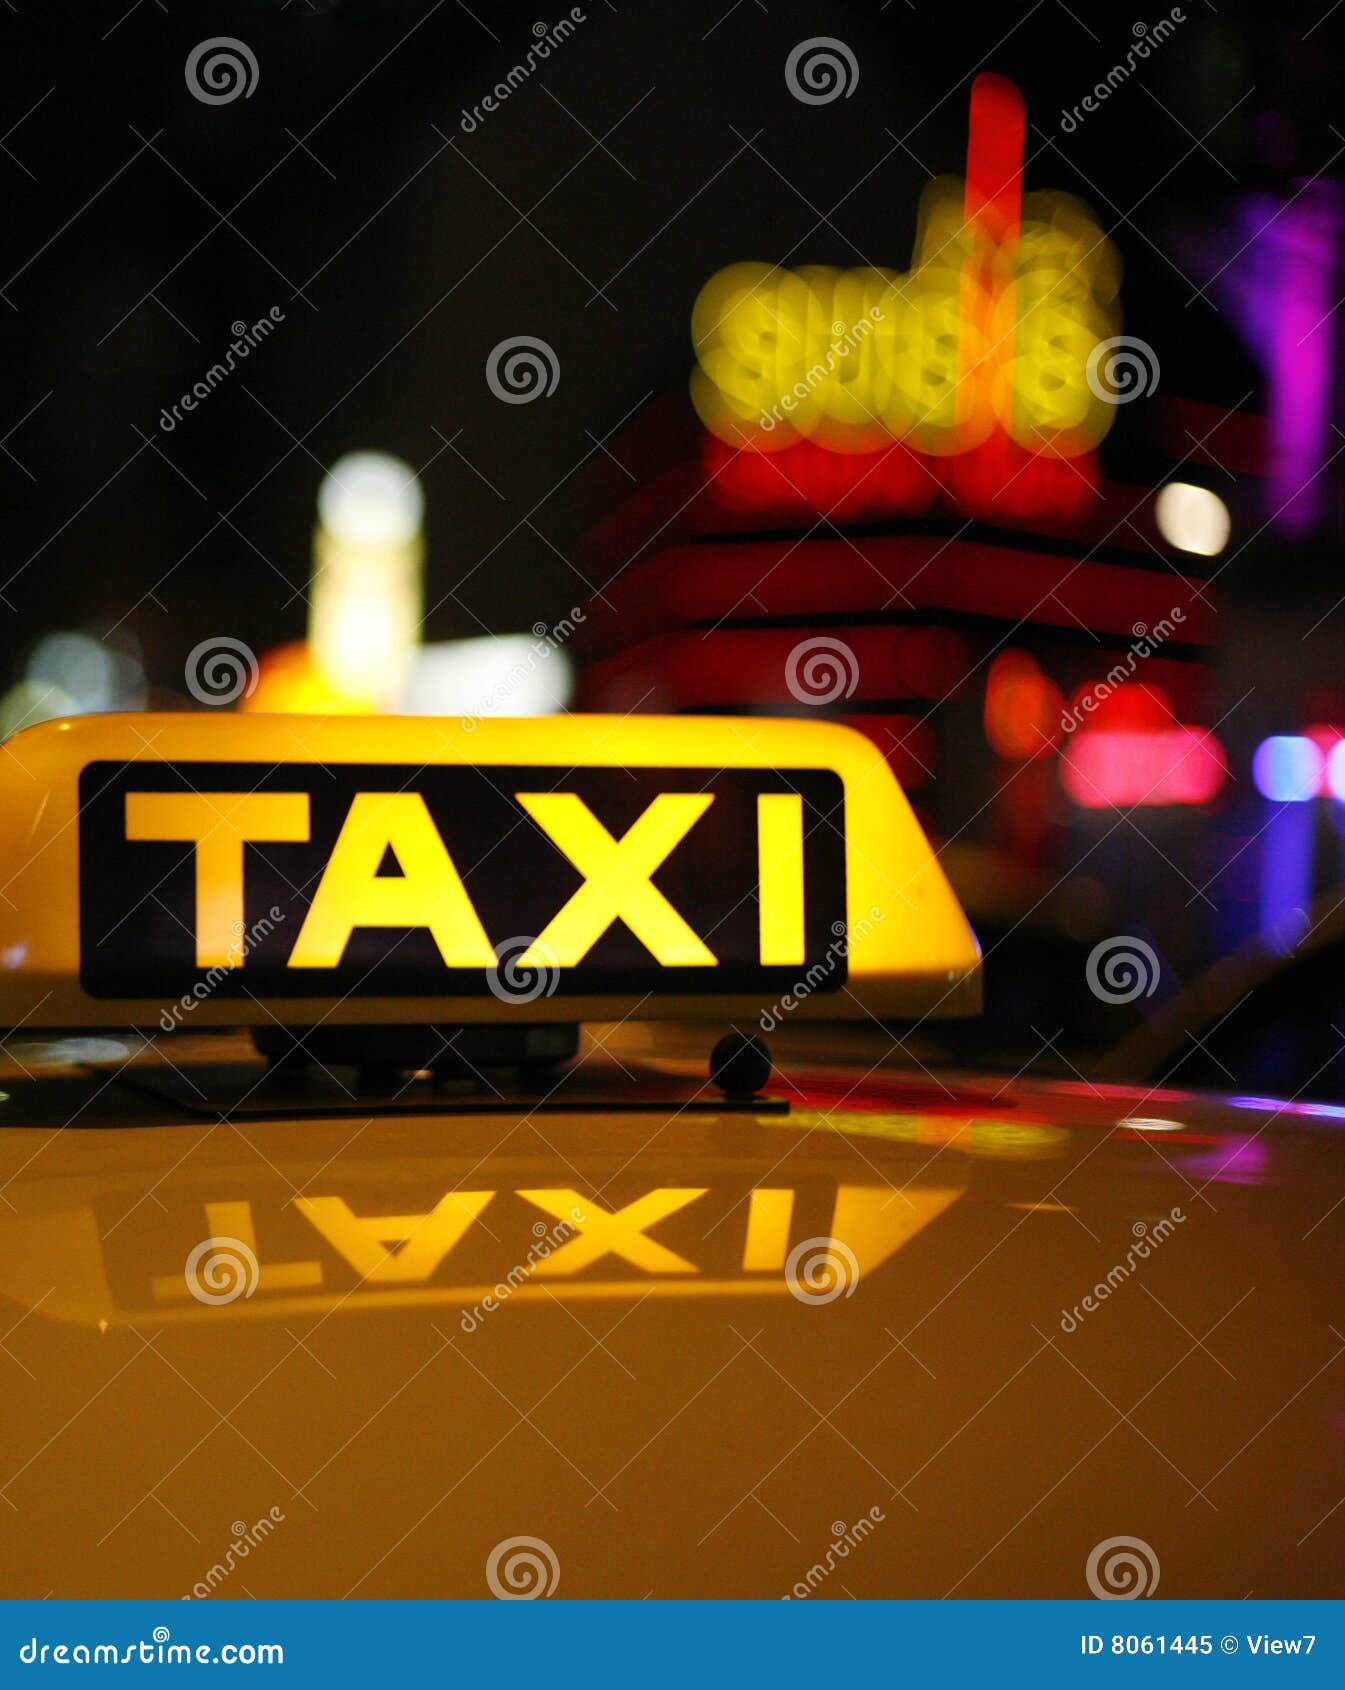 1,466 Taxi Neon Sign Photos - Free & Royalty-Free Stock Photos 